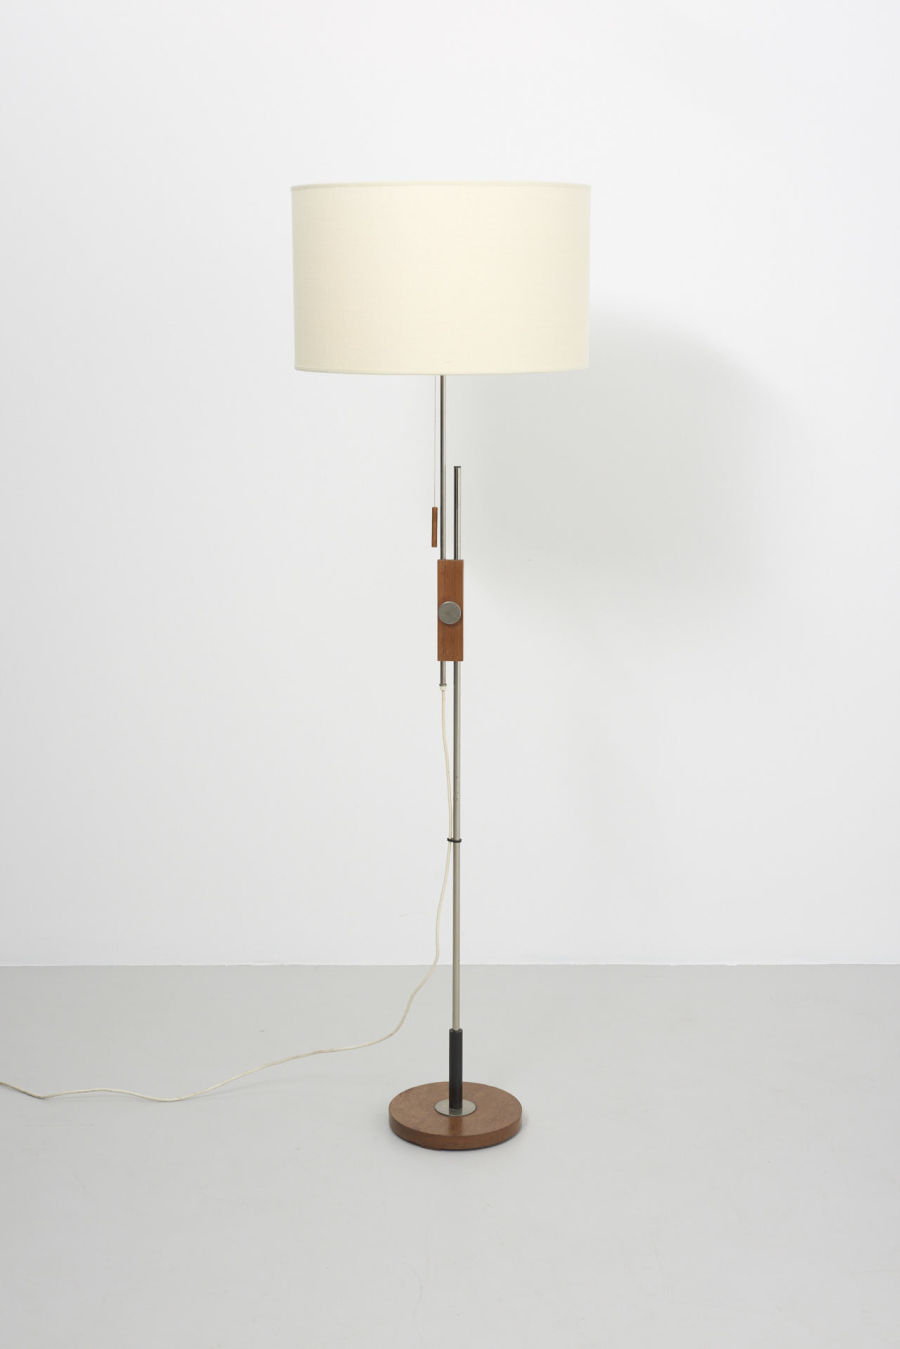 modestfurniture-vintage-2106-adjustable-floor-lamp-teak01